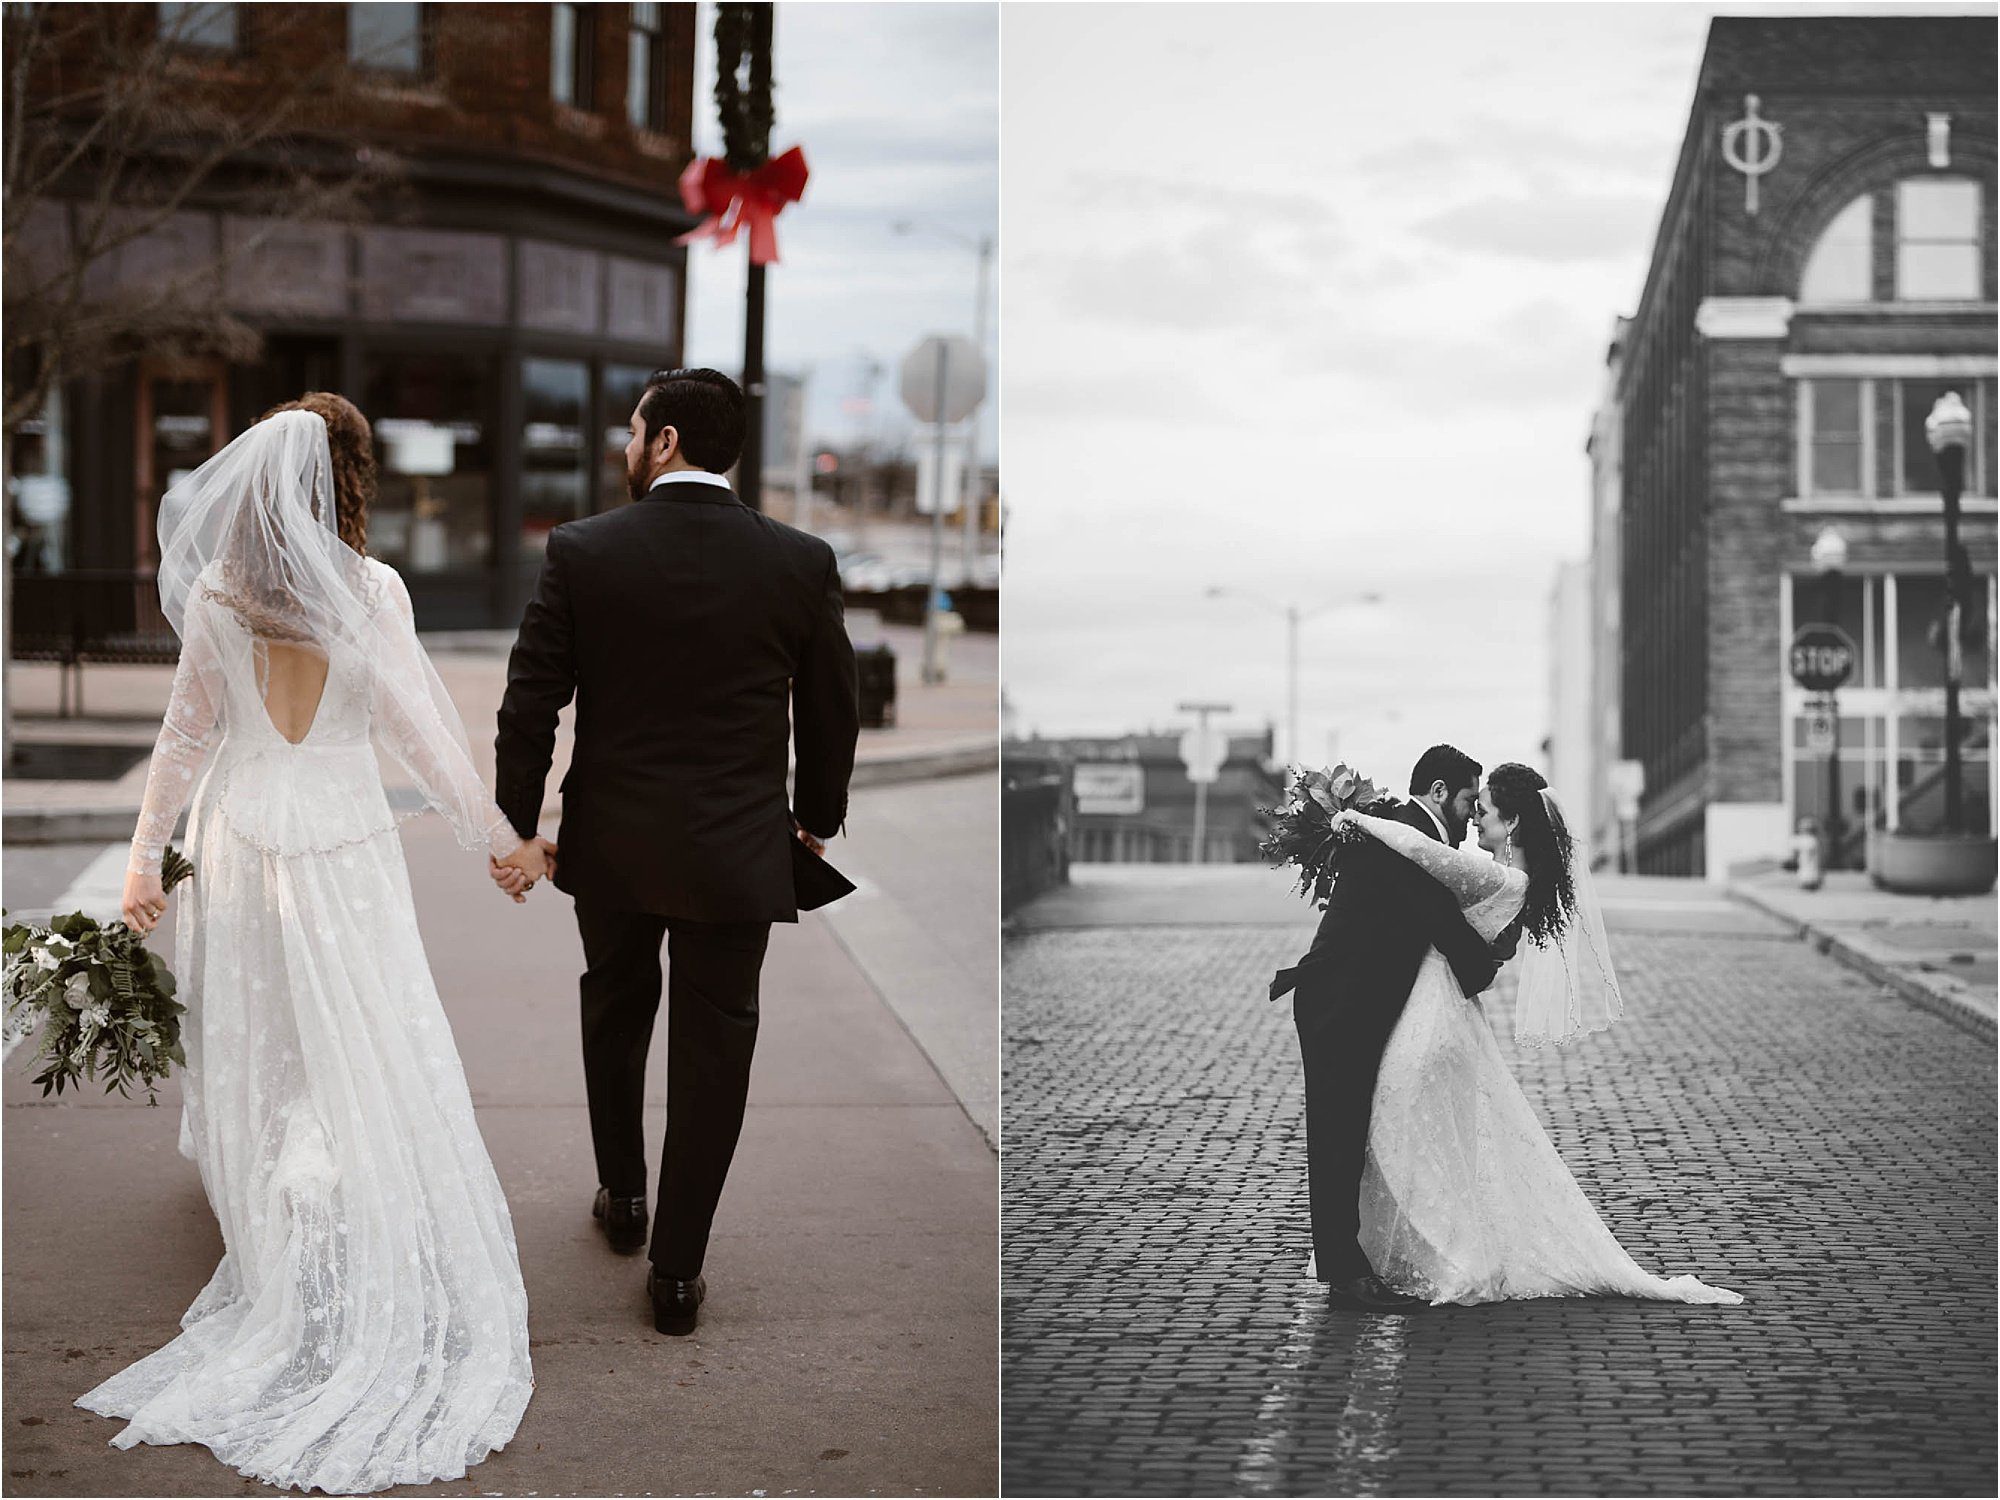 bride and groom walking on brick road